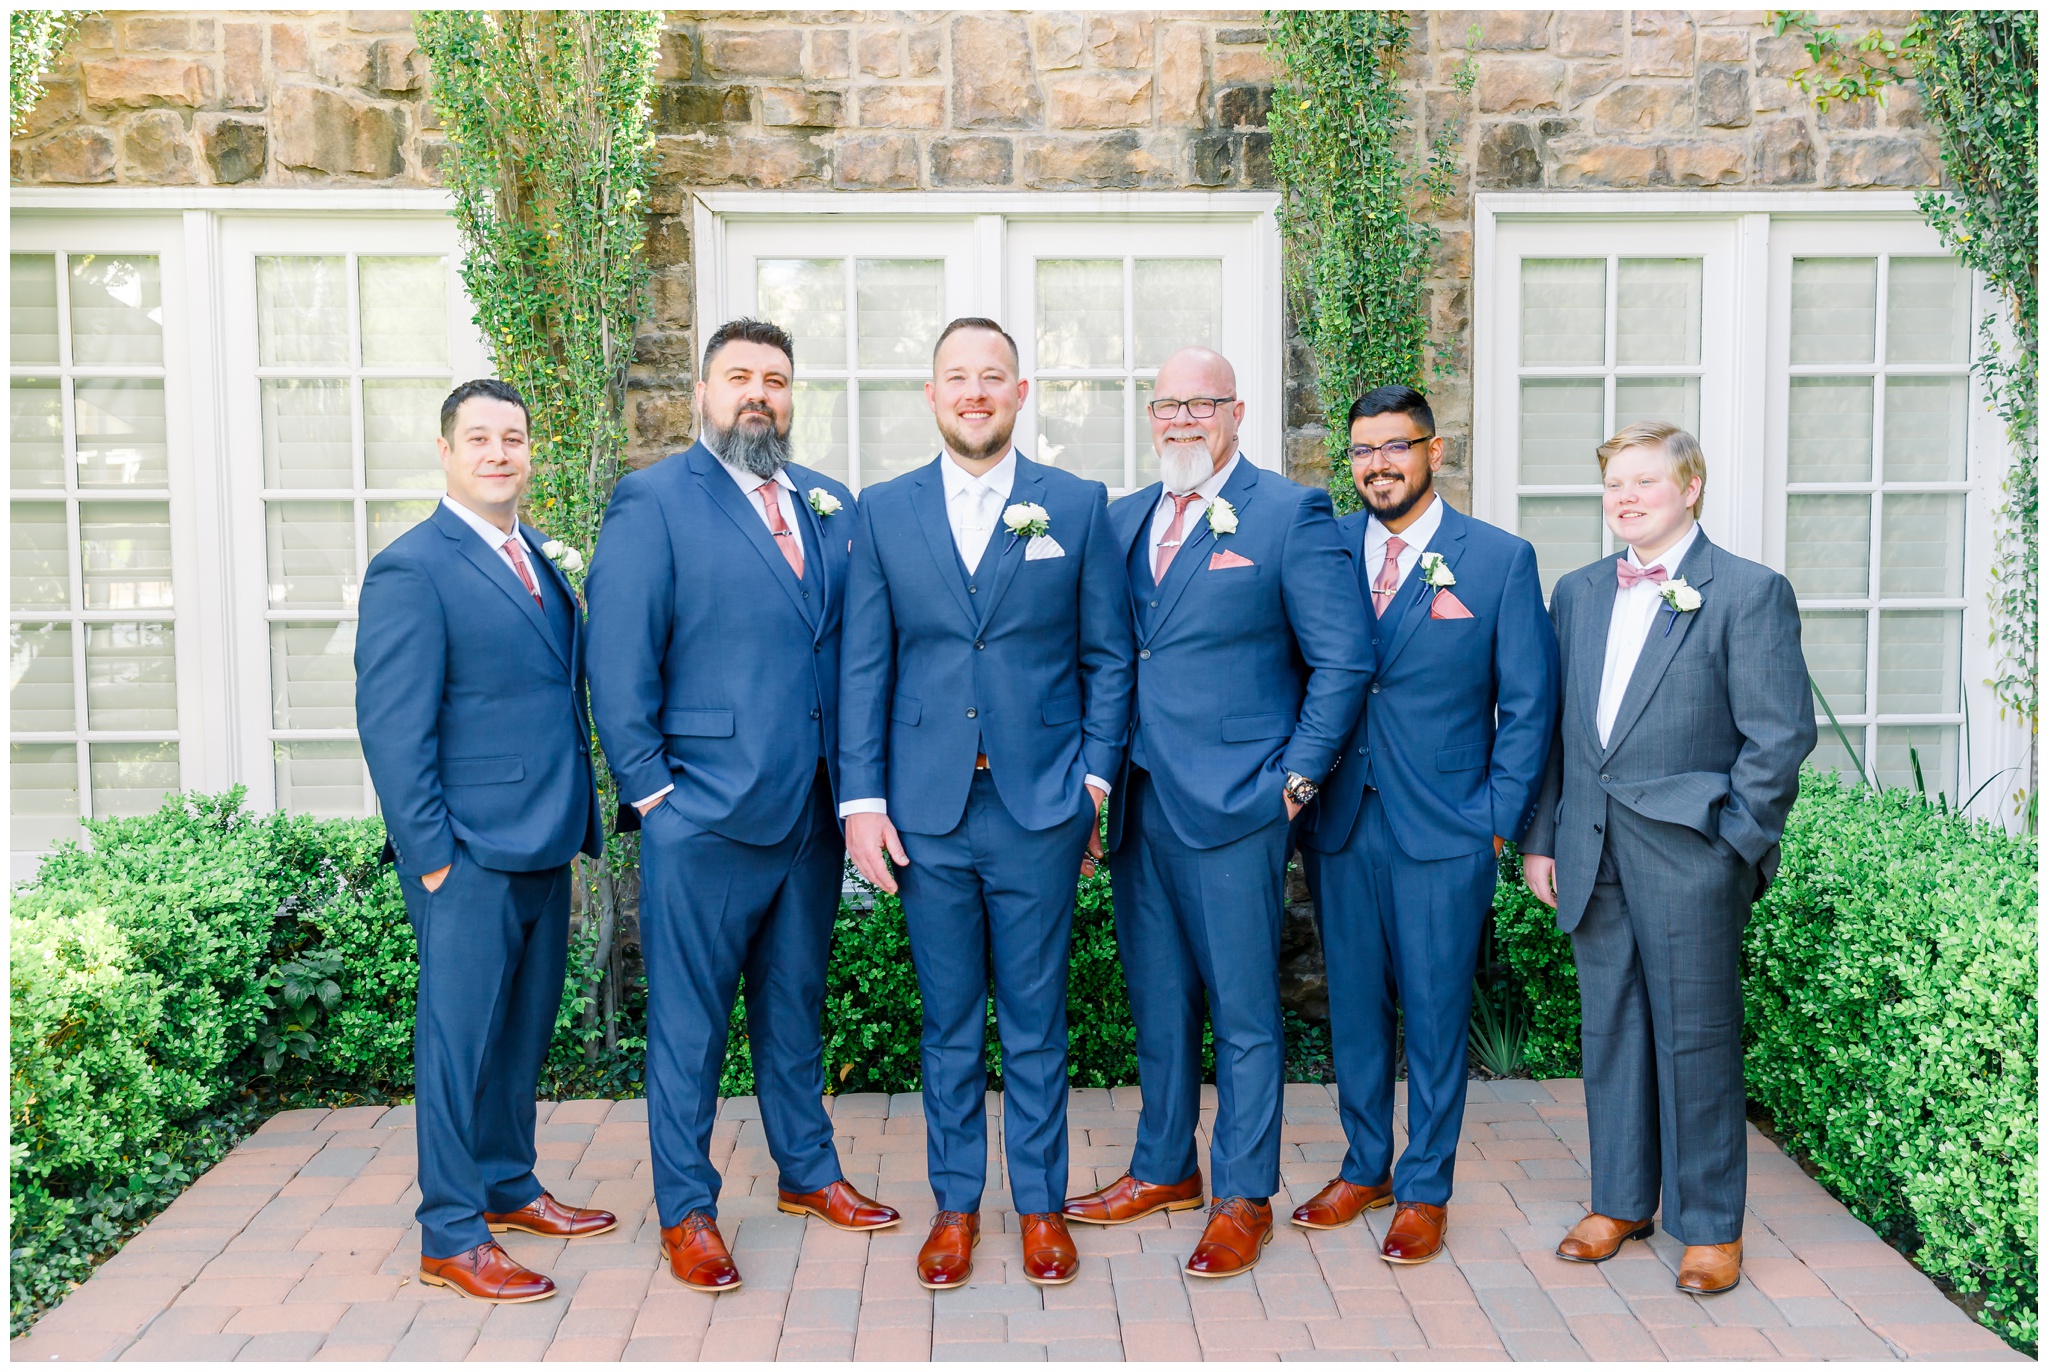 Groom with groomsmen in navy suits